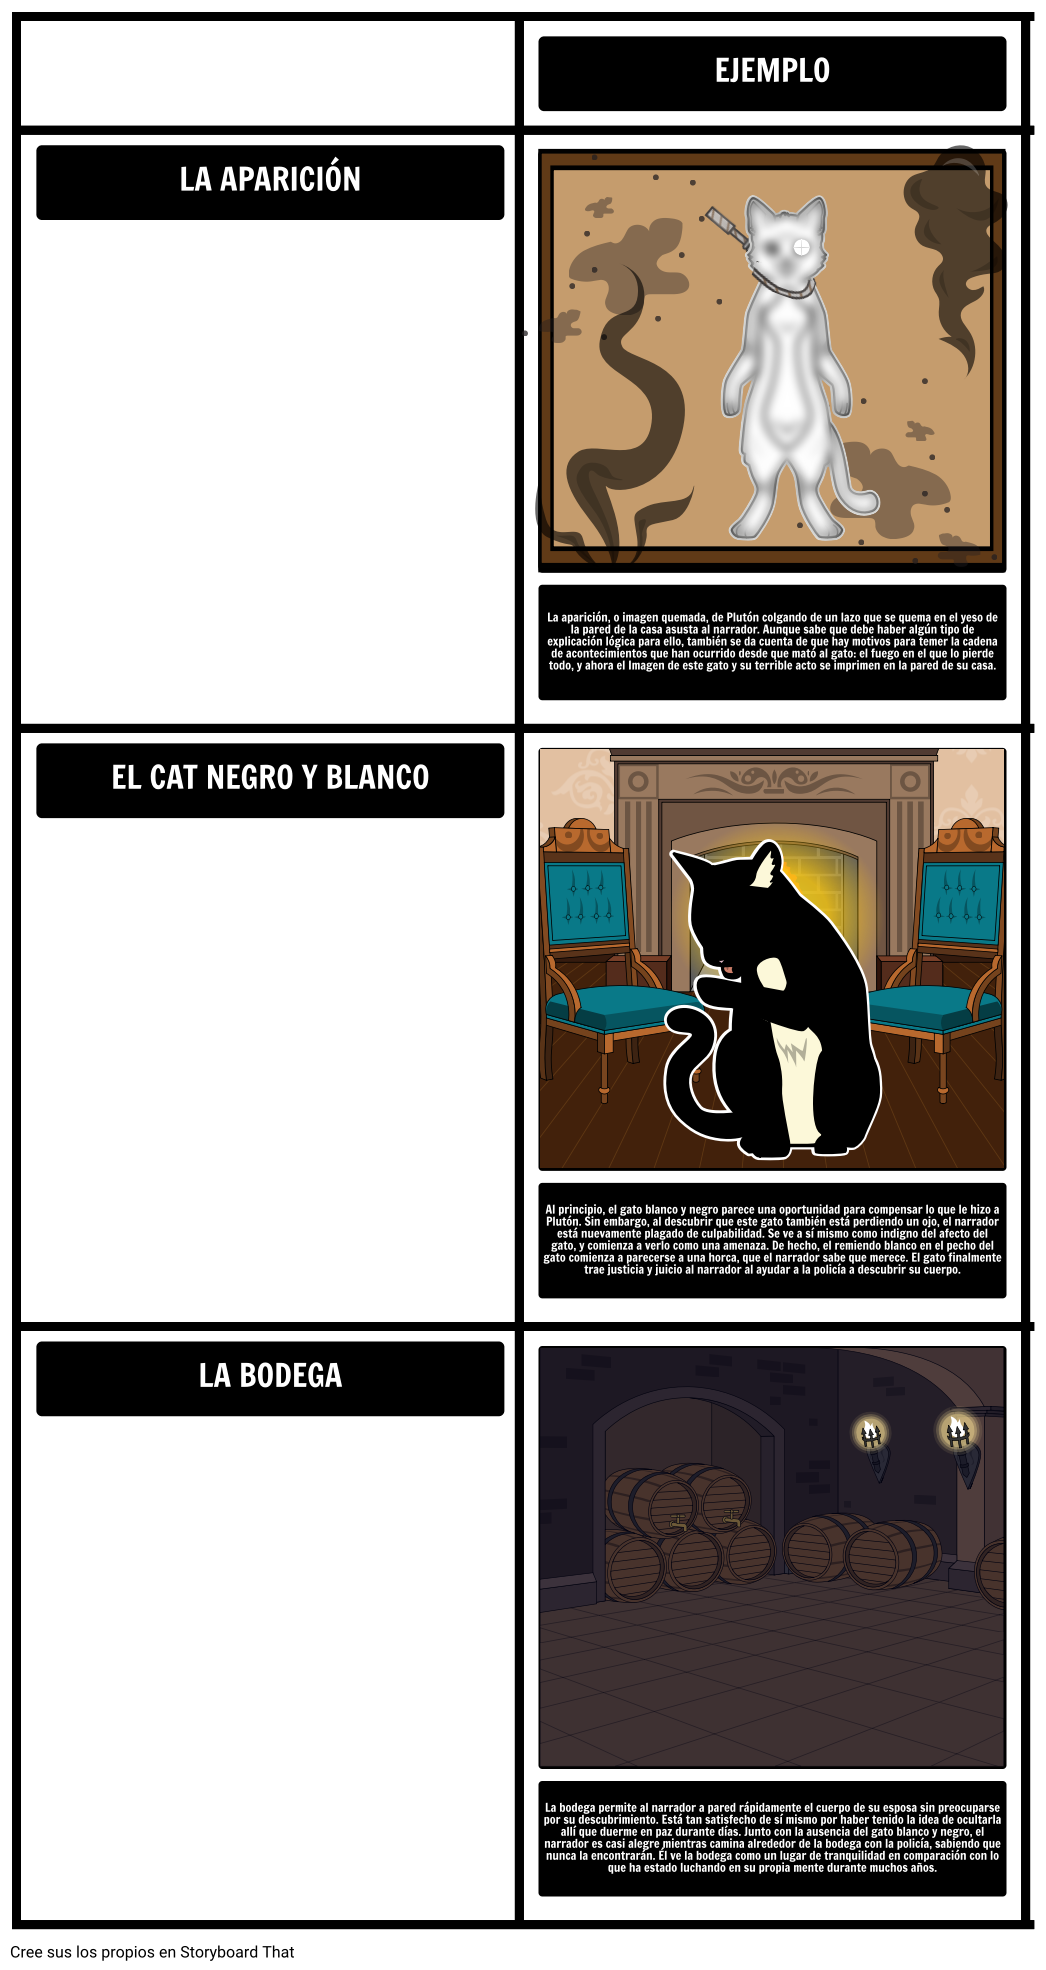 Temas, Símbolos y Motivos en el Gato Negro